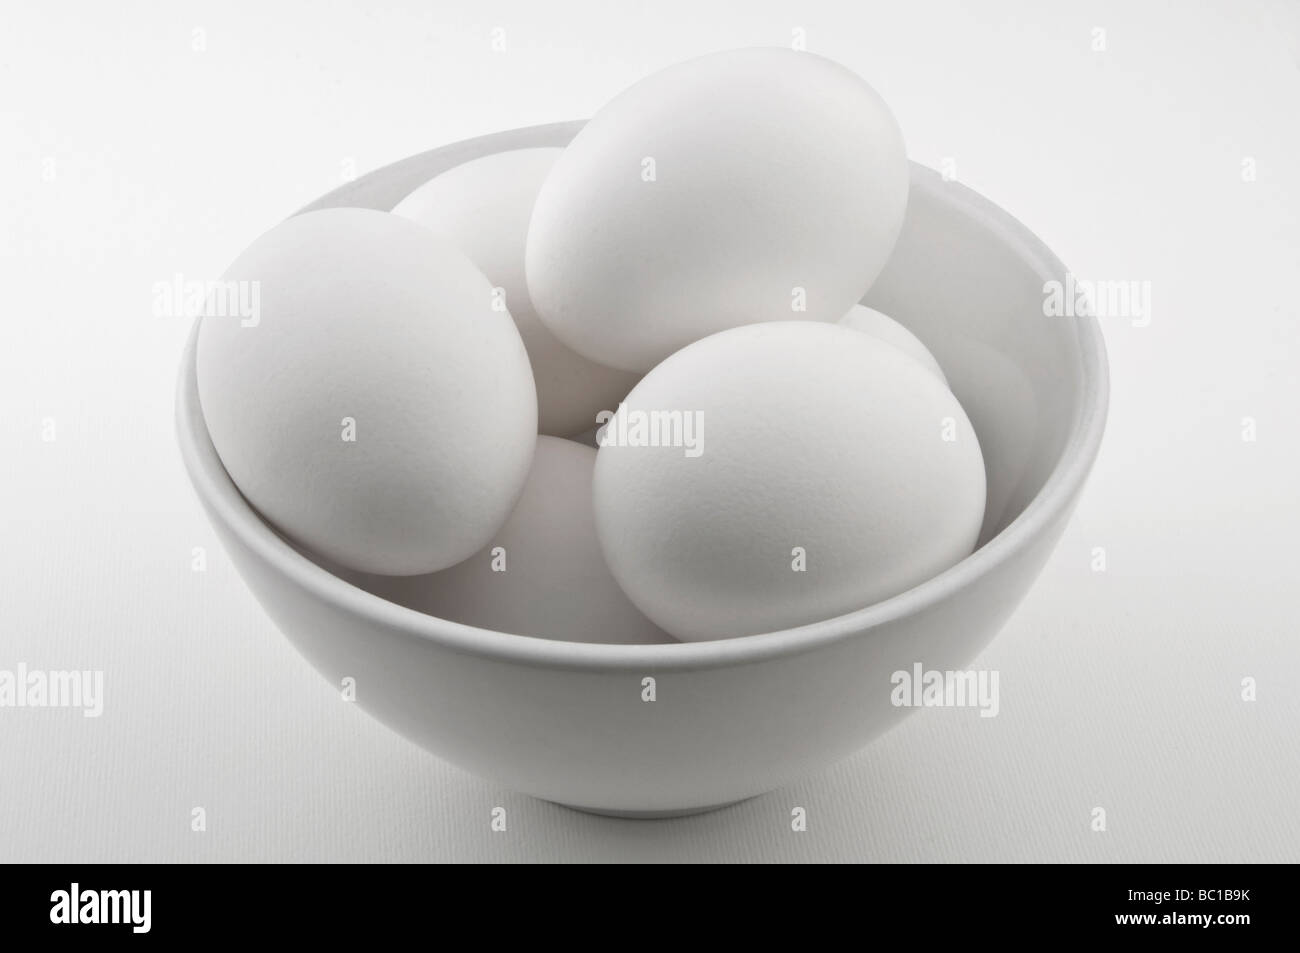 Los huevos de pollo en un recipiente blanco. Foto de stock